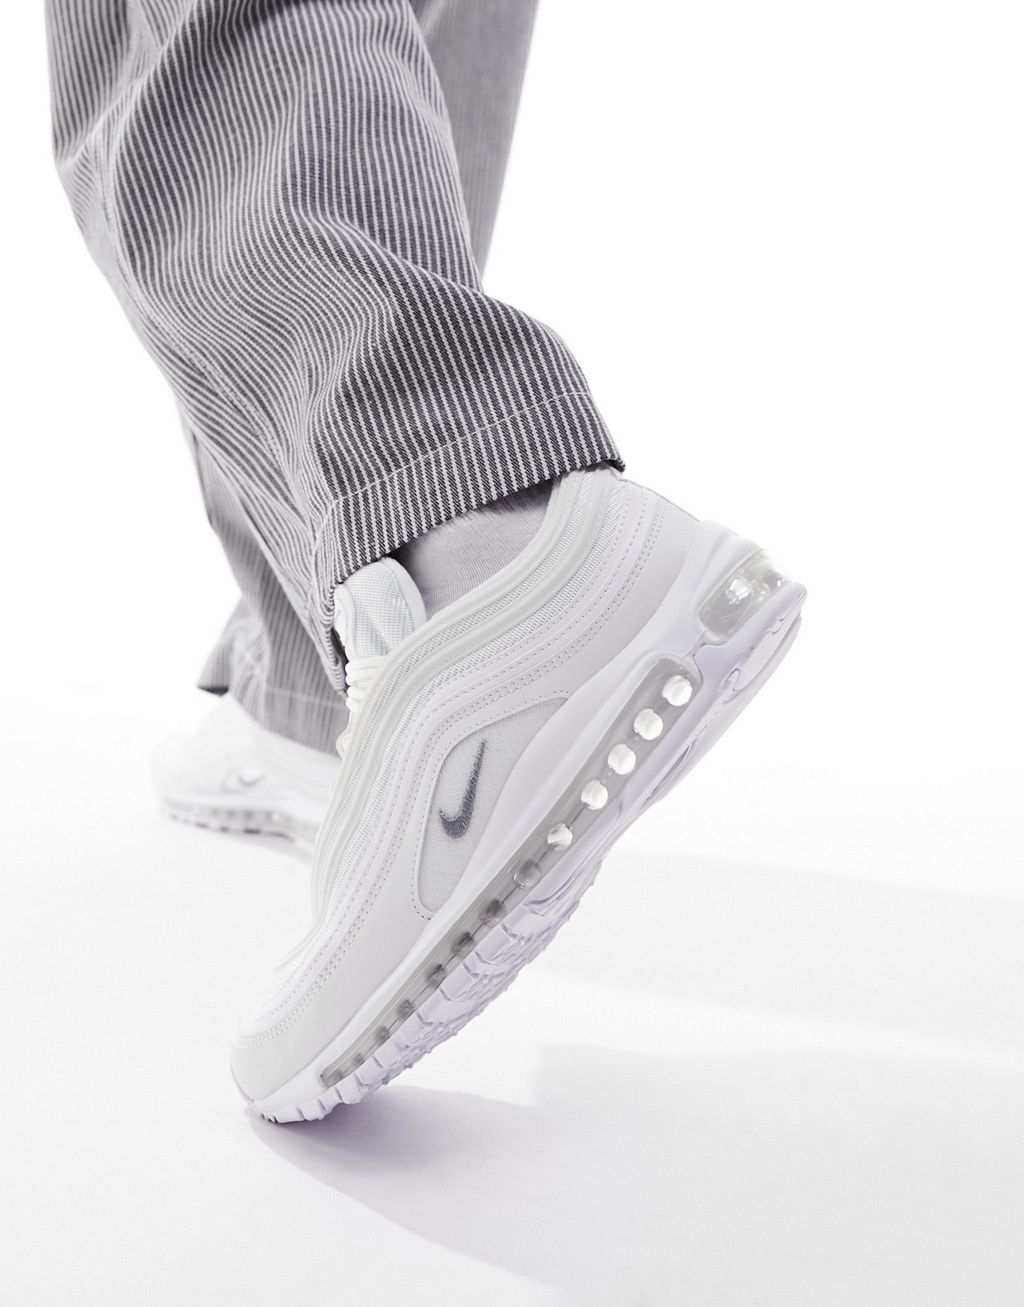 Тройные белые кроссовки Nike Air Max 97